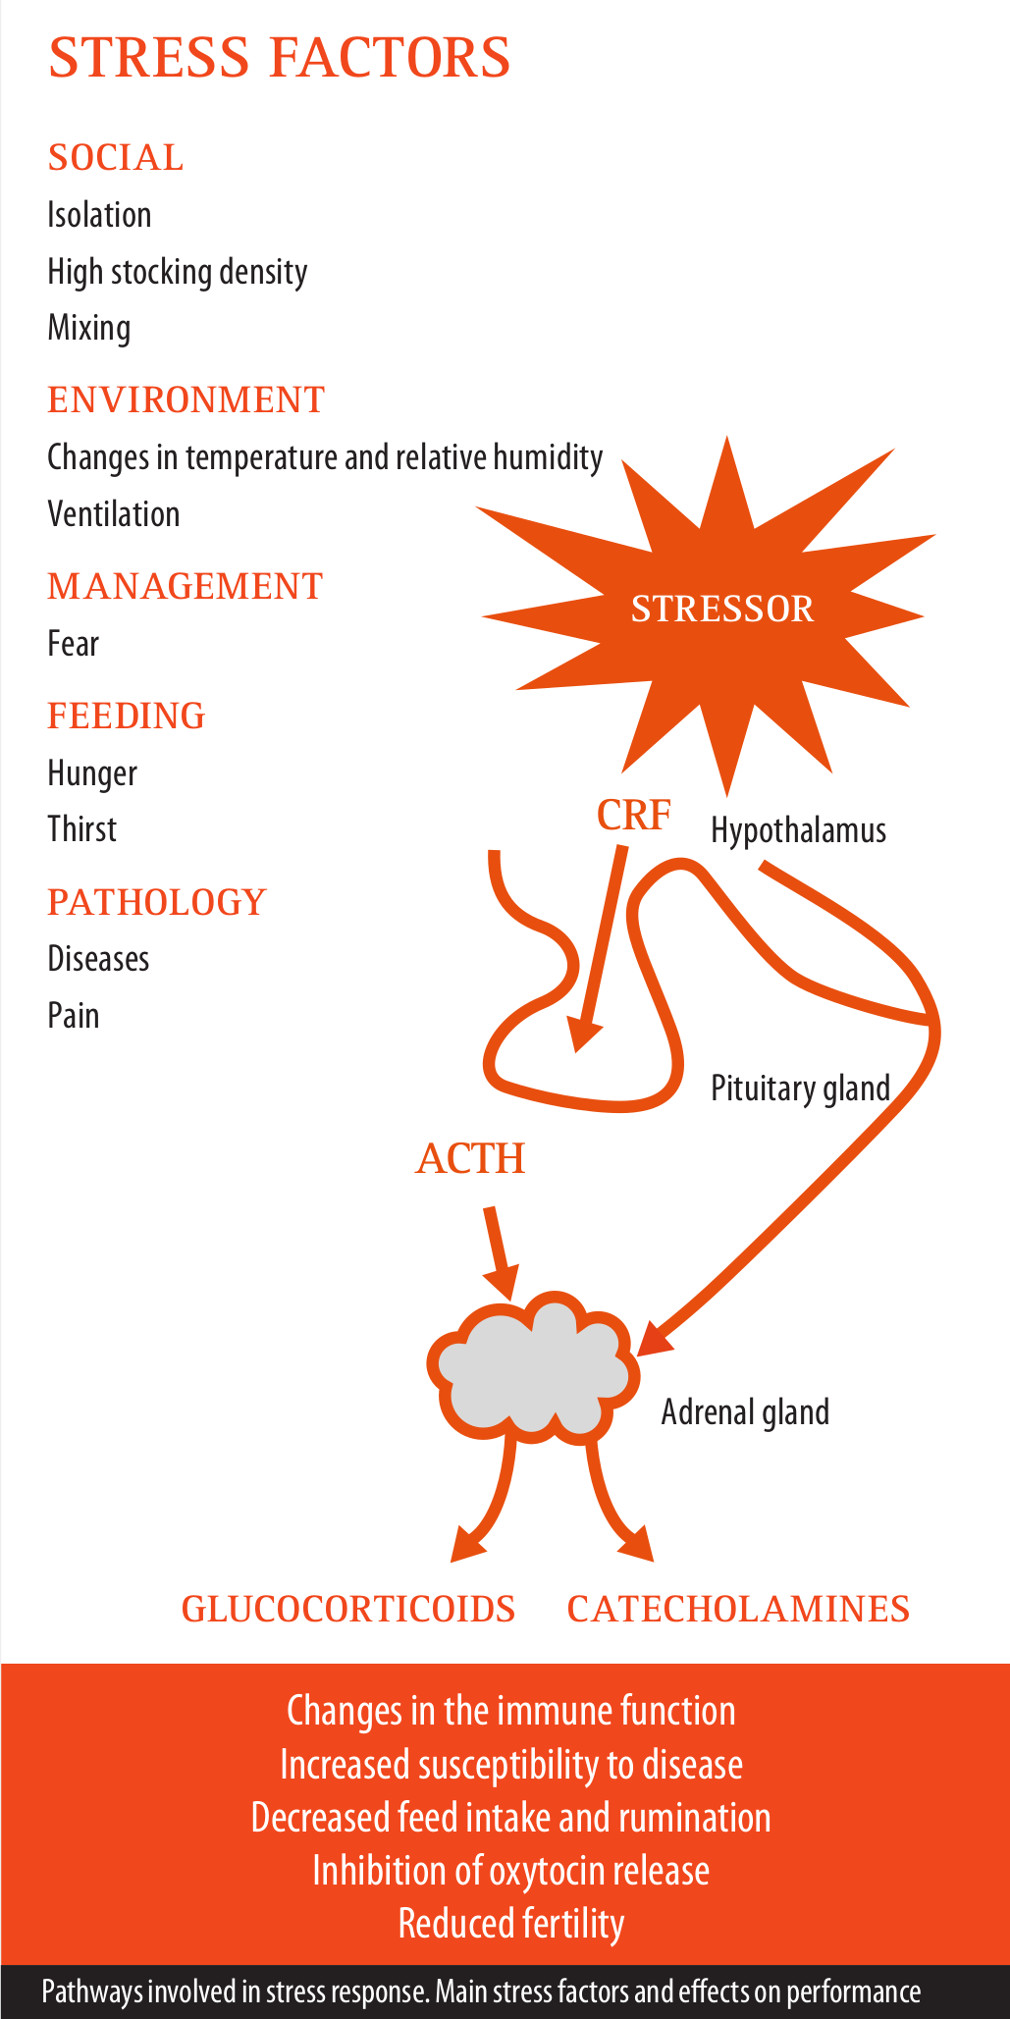 Stress factors